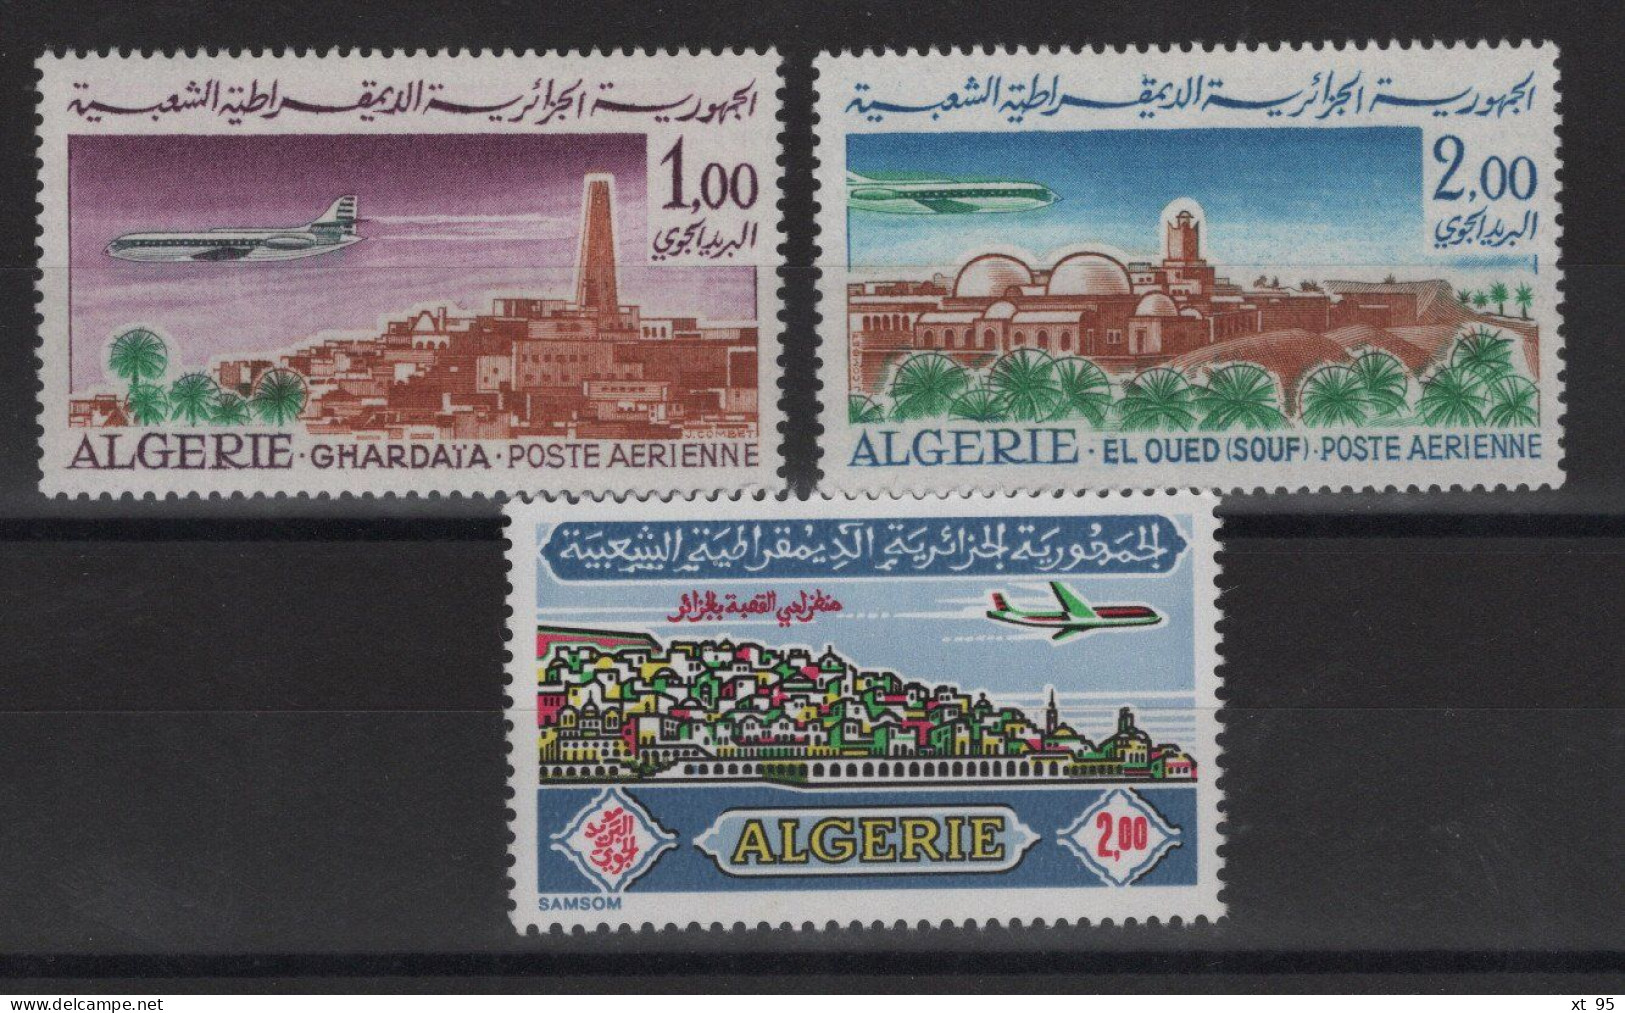 Algerie - PA N°15 + 16 + 18 - Cote 8.55€ - ** Neuf Sans Charniere - Algérie (1962-...)